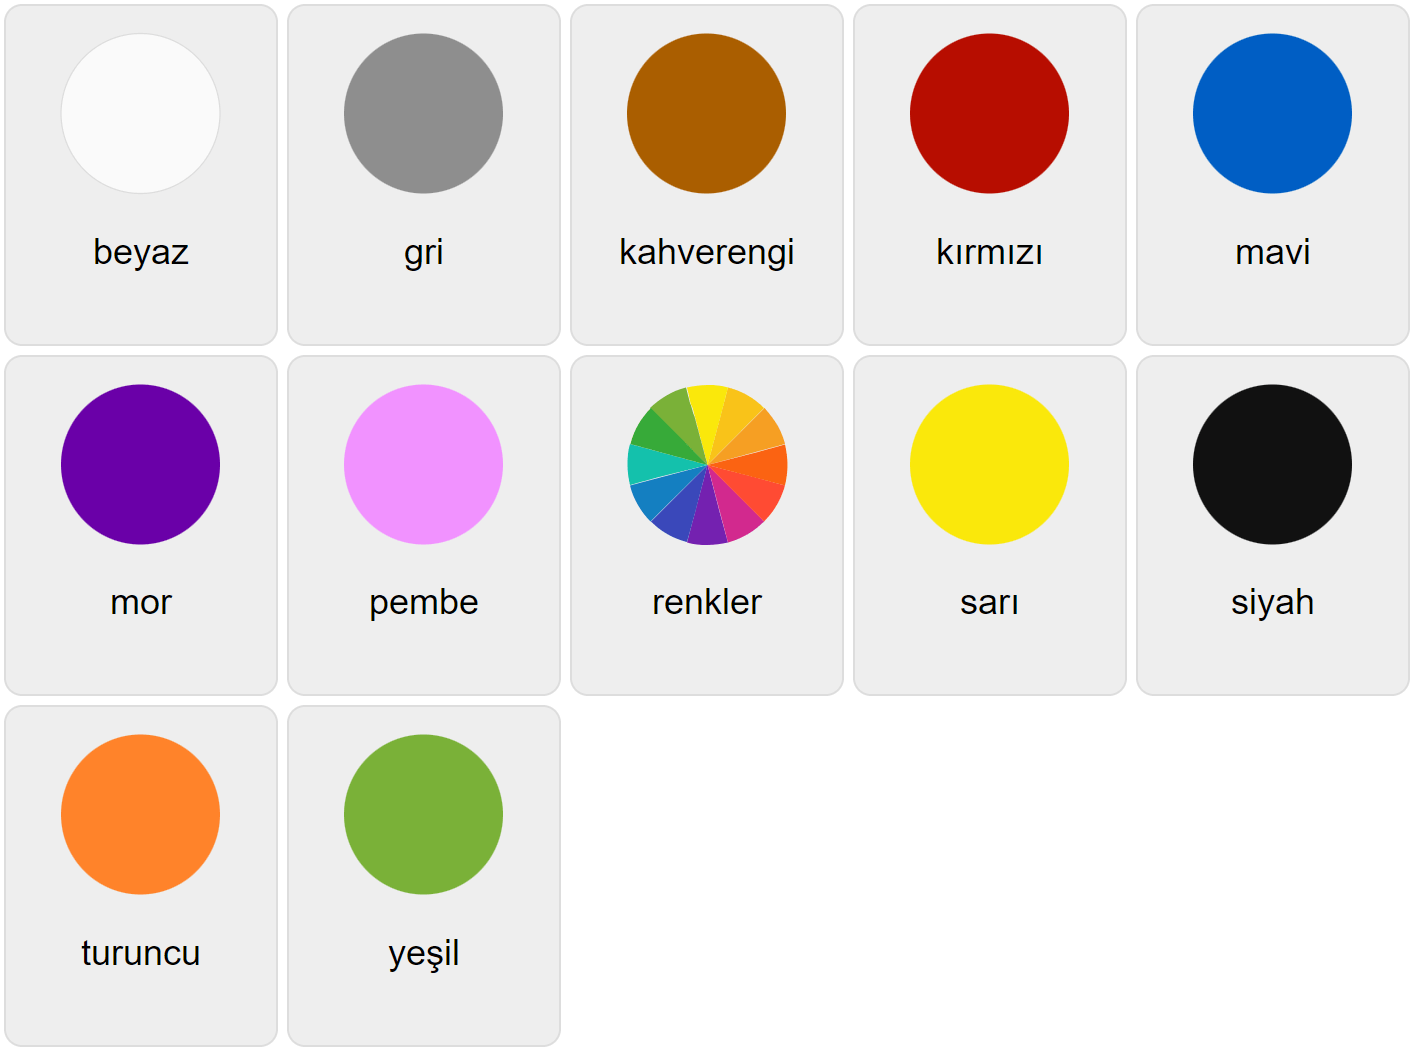 Colores en turco